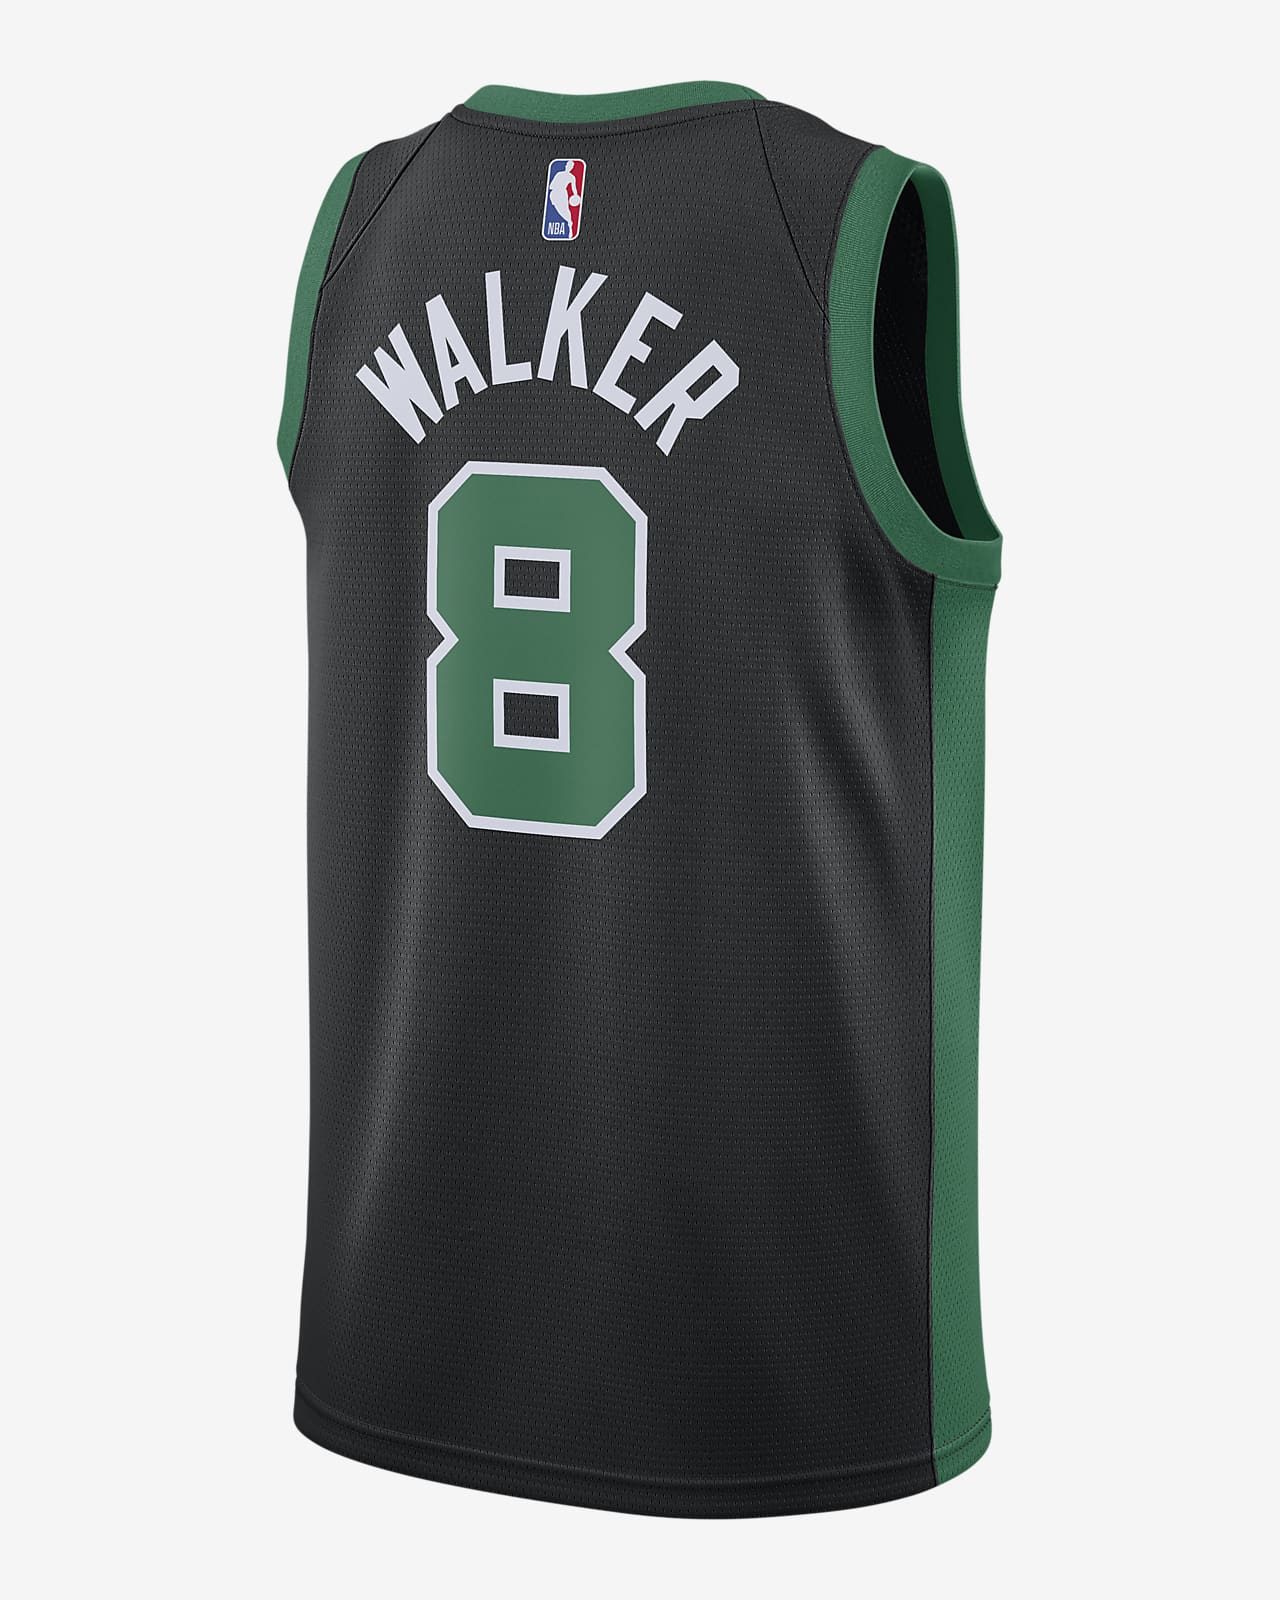 Classic Kemba Walker #8 Boston Celtics Basketball jersey Stitched Black 